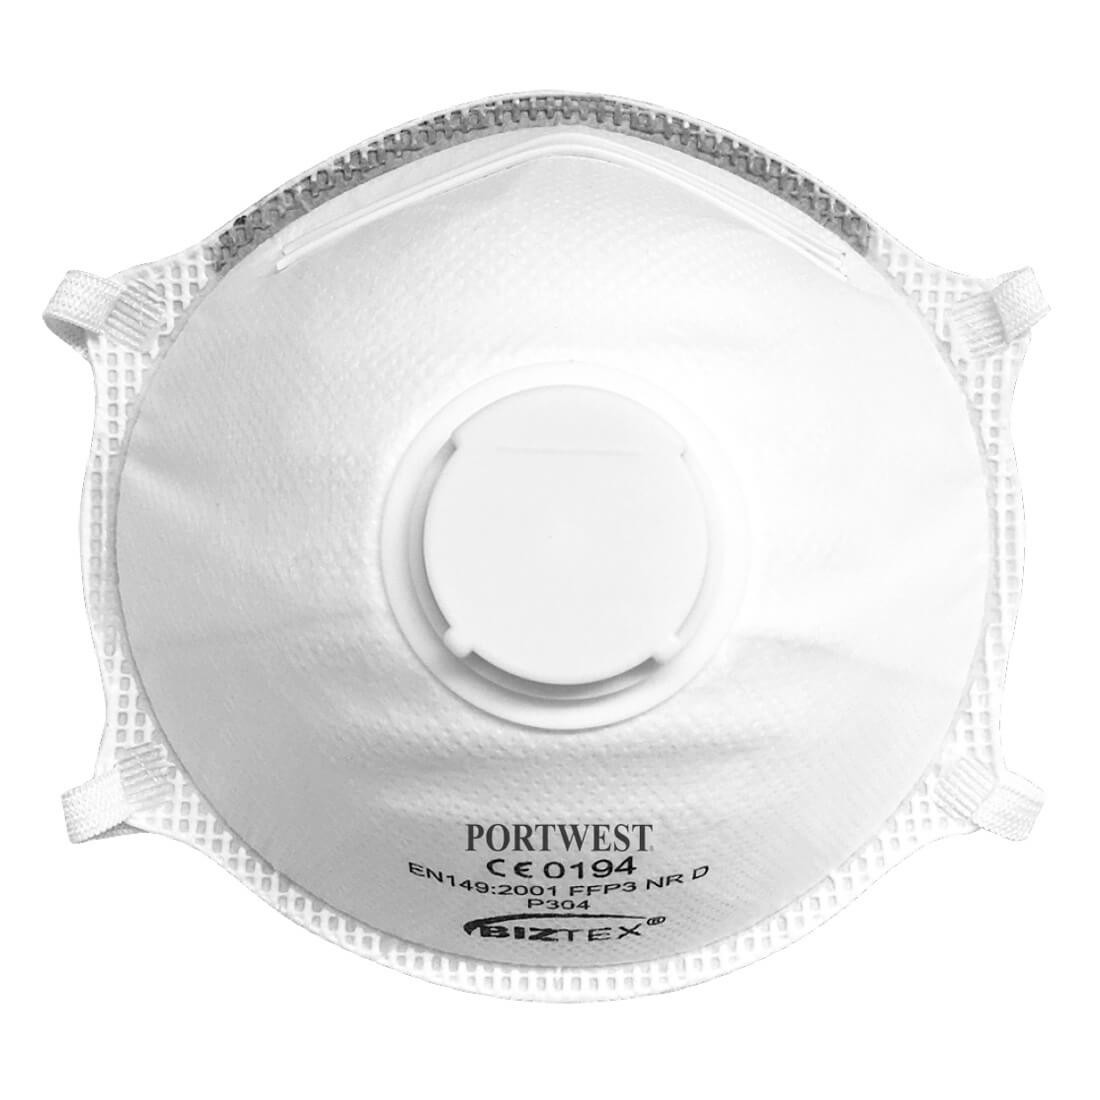 Masti de protectie cu valva, Dolomite Light Cup FFP3 - Echipamente de protectie personala